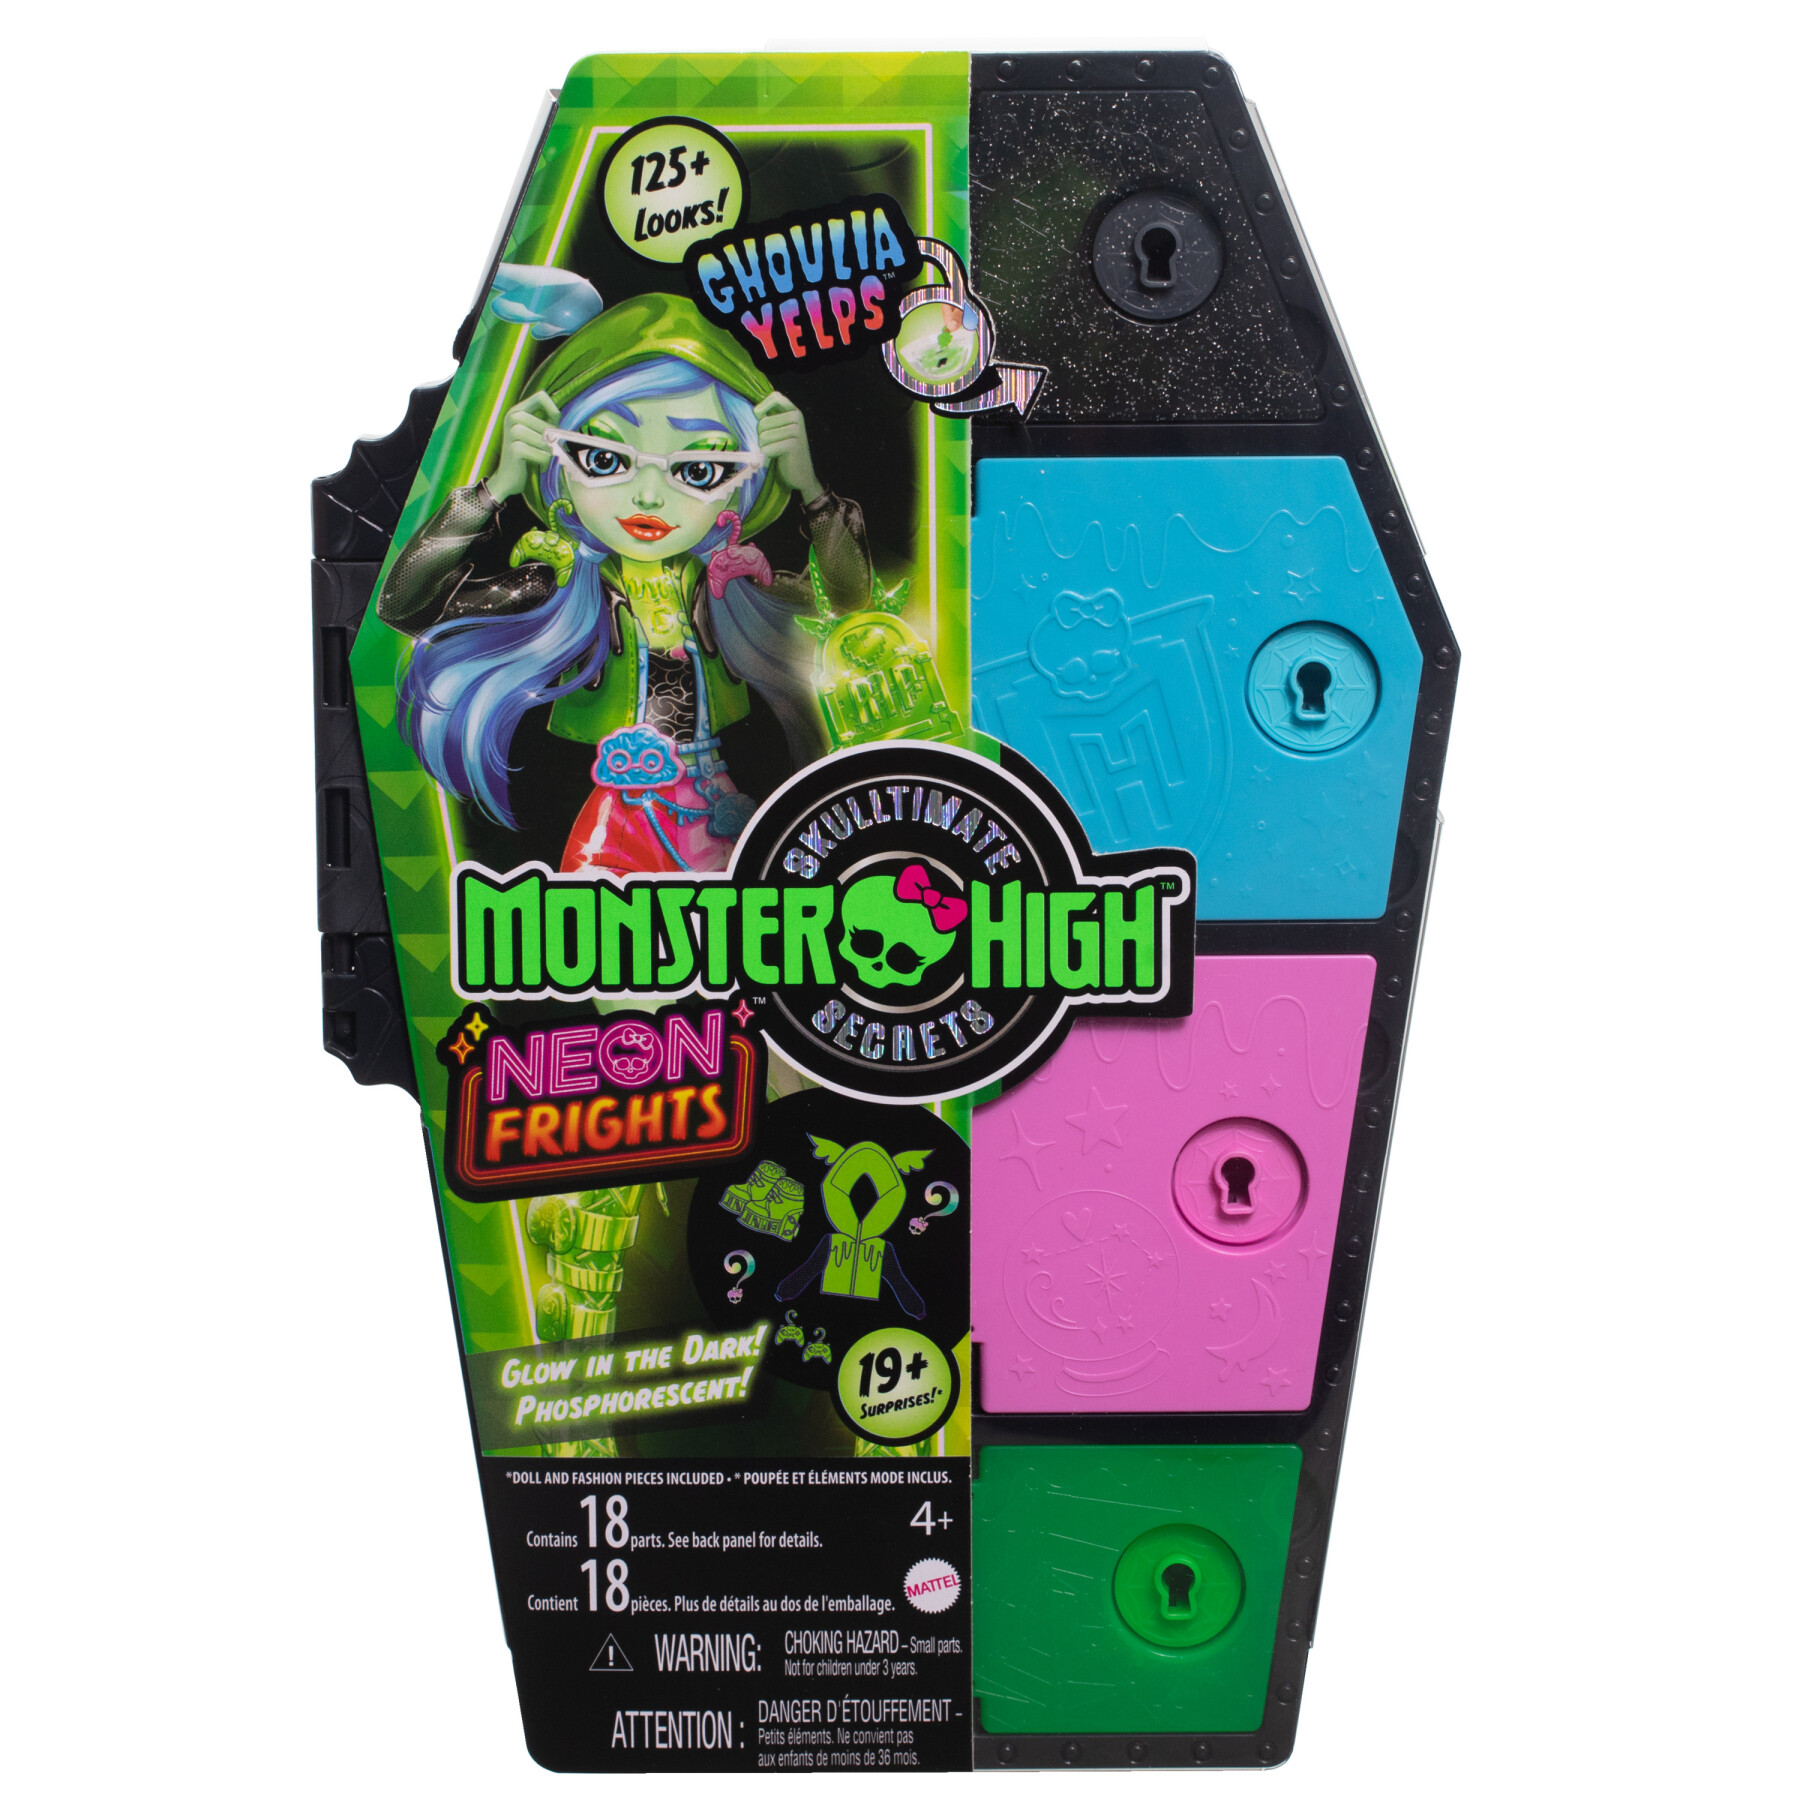 Monster high - segreti da brivido neon frights ghoulia yelps, playset con bambola, abiti e armadietto per i look - Monster High